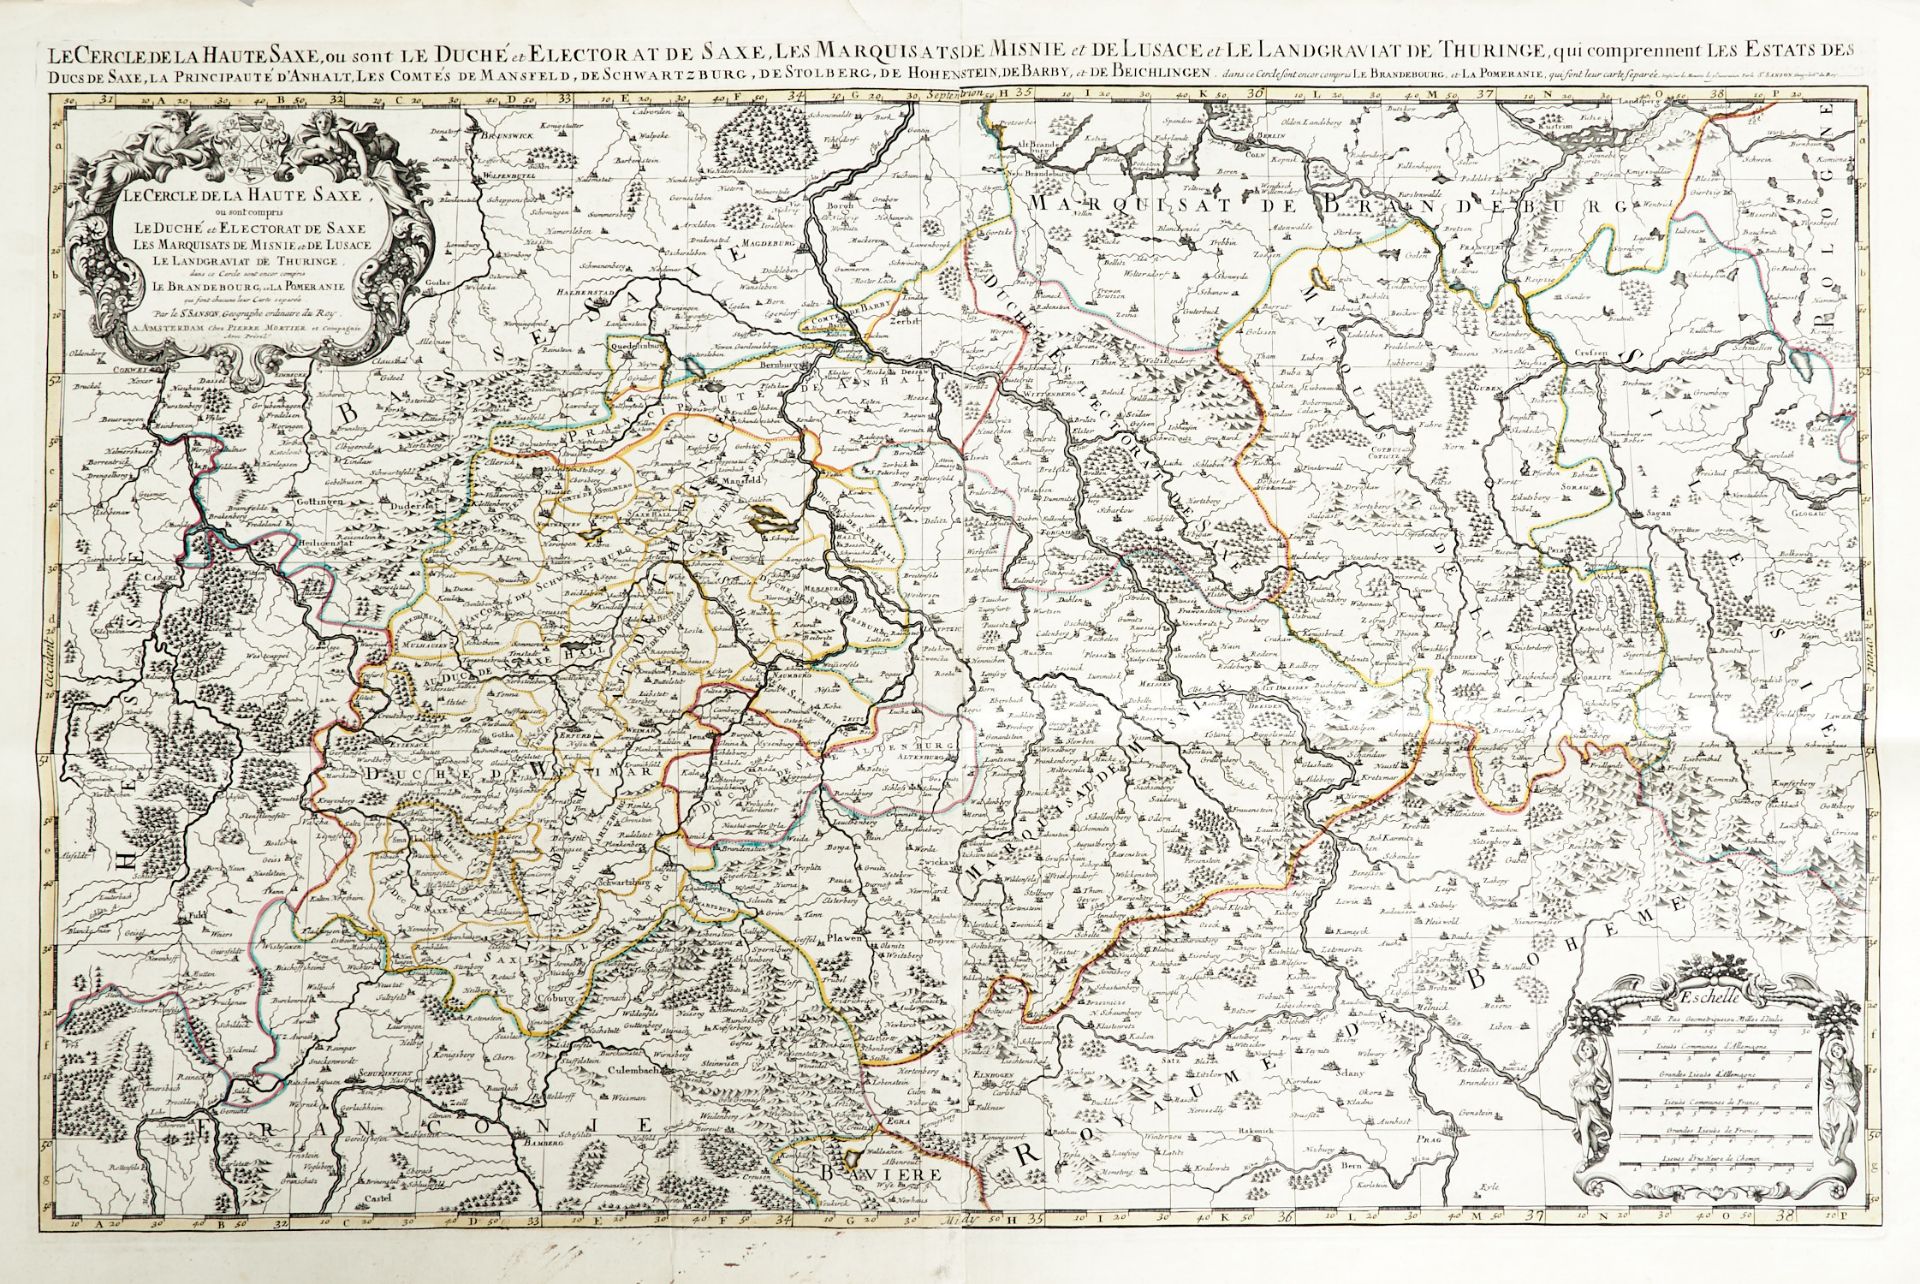 Sachsen Thüringen Konvolut - 12 Kupferstichkarten des 16. bis 18. Jhdts. von verschied. Stechern und - Bild 4 aus 8